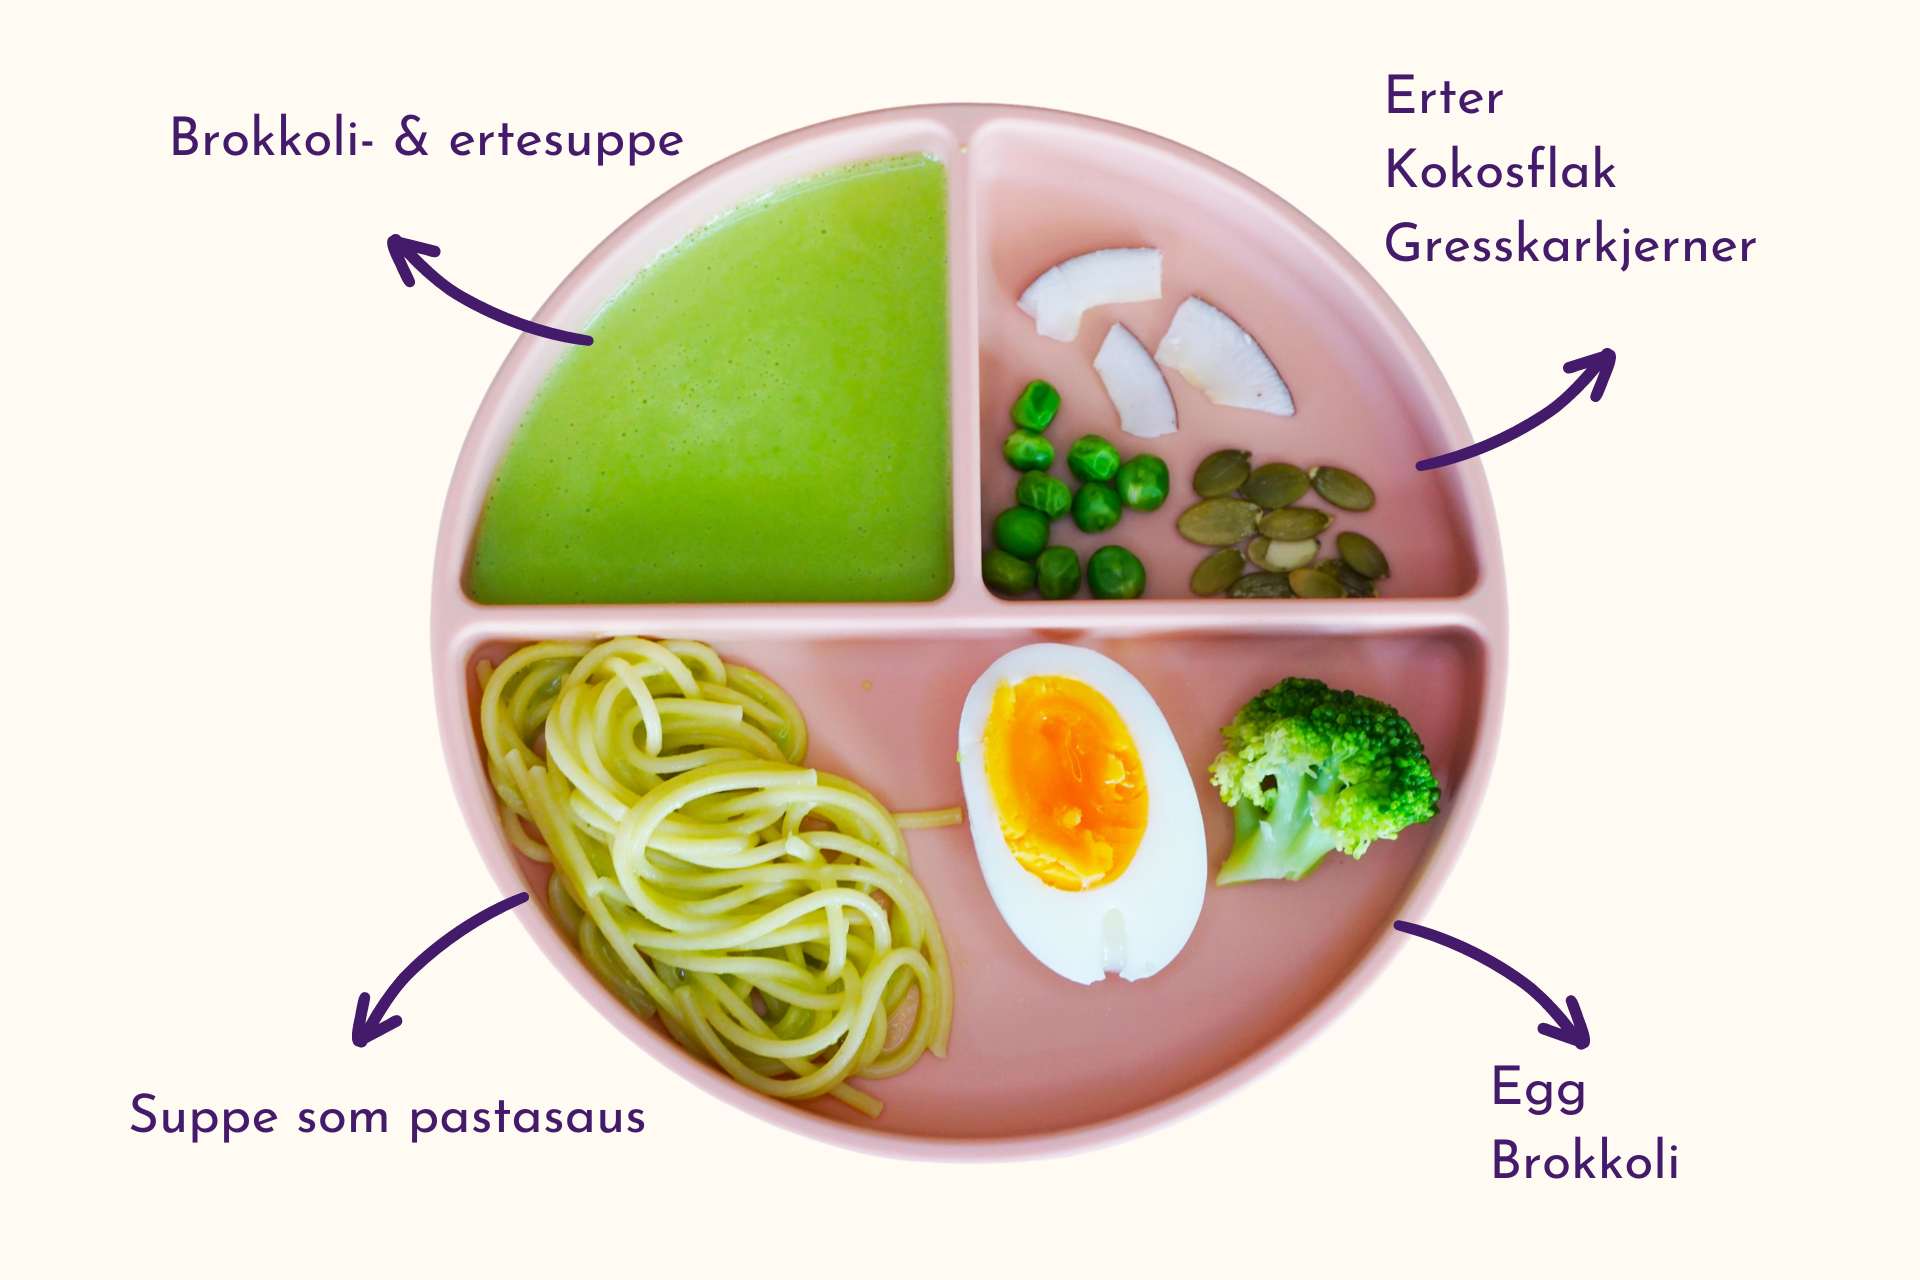 Barnevennlig Brokkoli- & ertesuppe med egg og gresskarkjerner